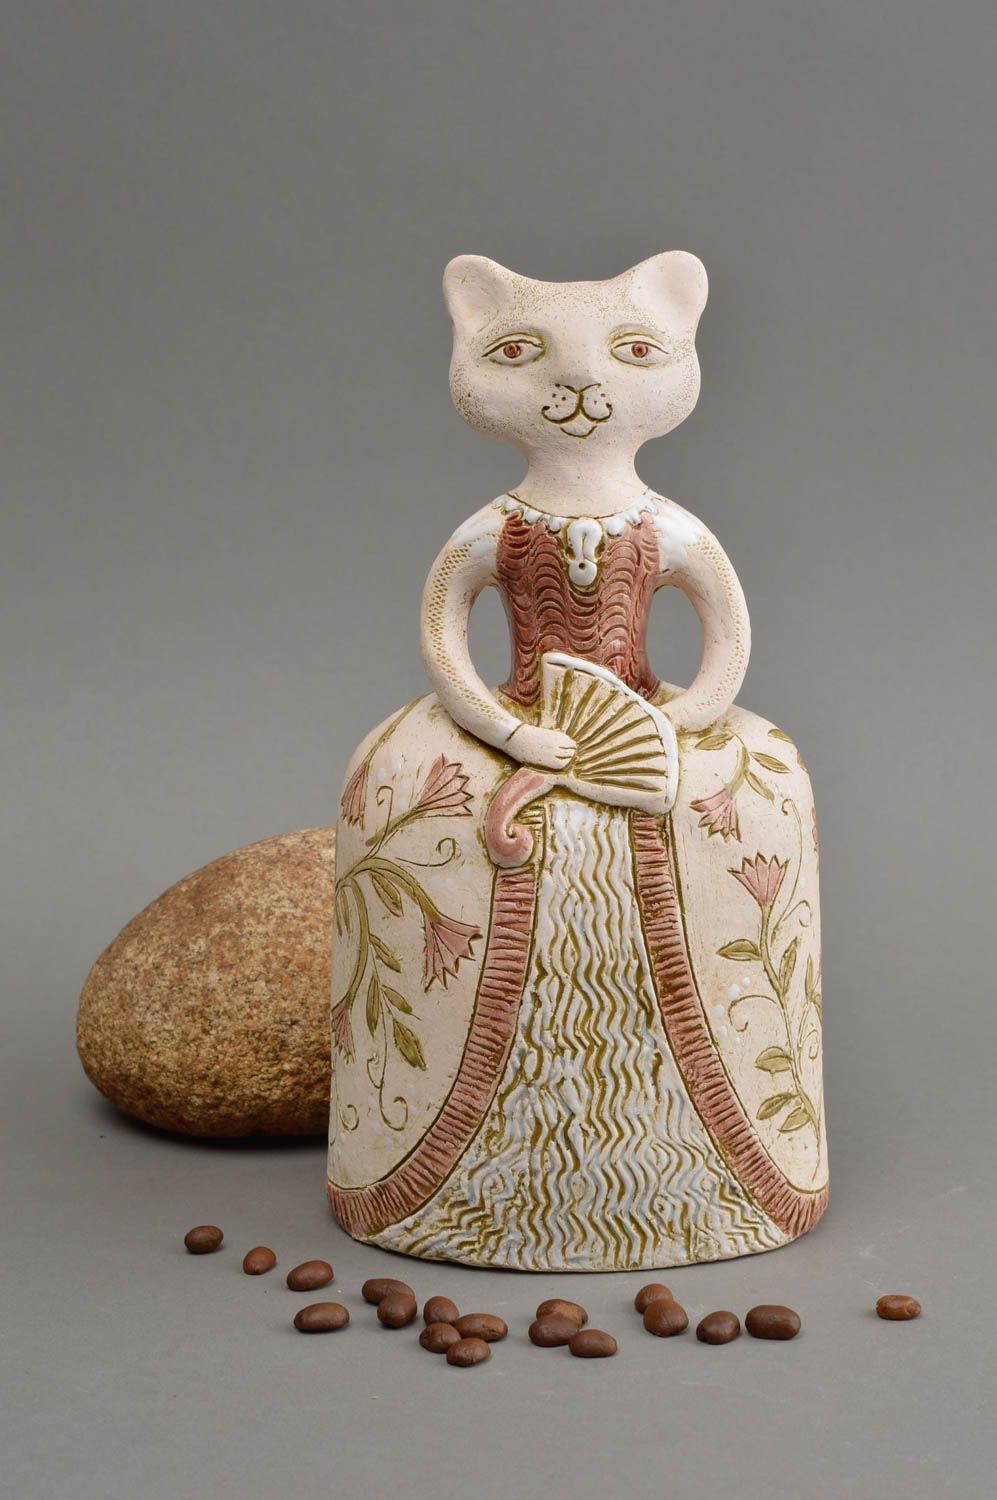 Статуэтка из шамотной глины расписанная глазурью в виде кошки ручной работы фото 1